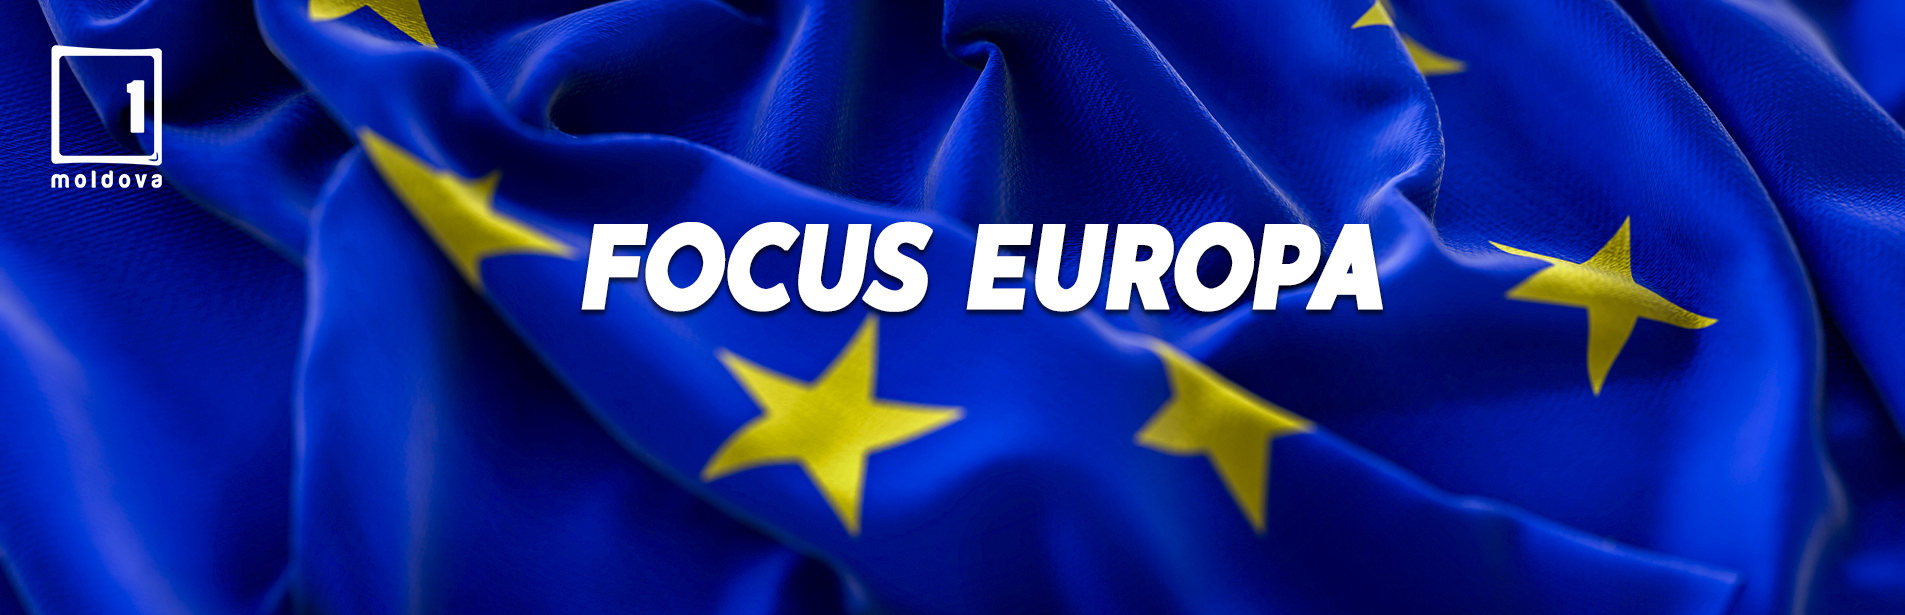 Focus Europa